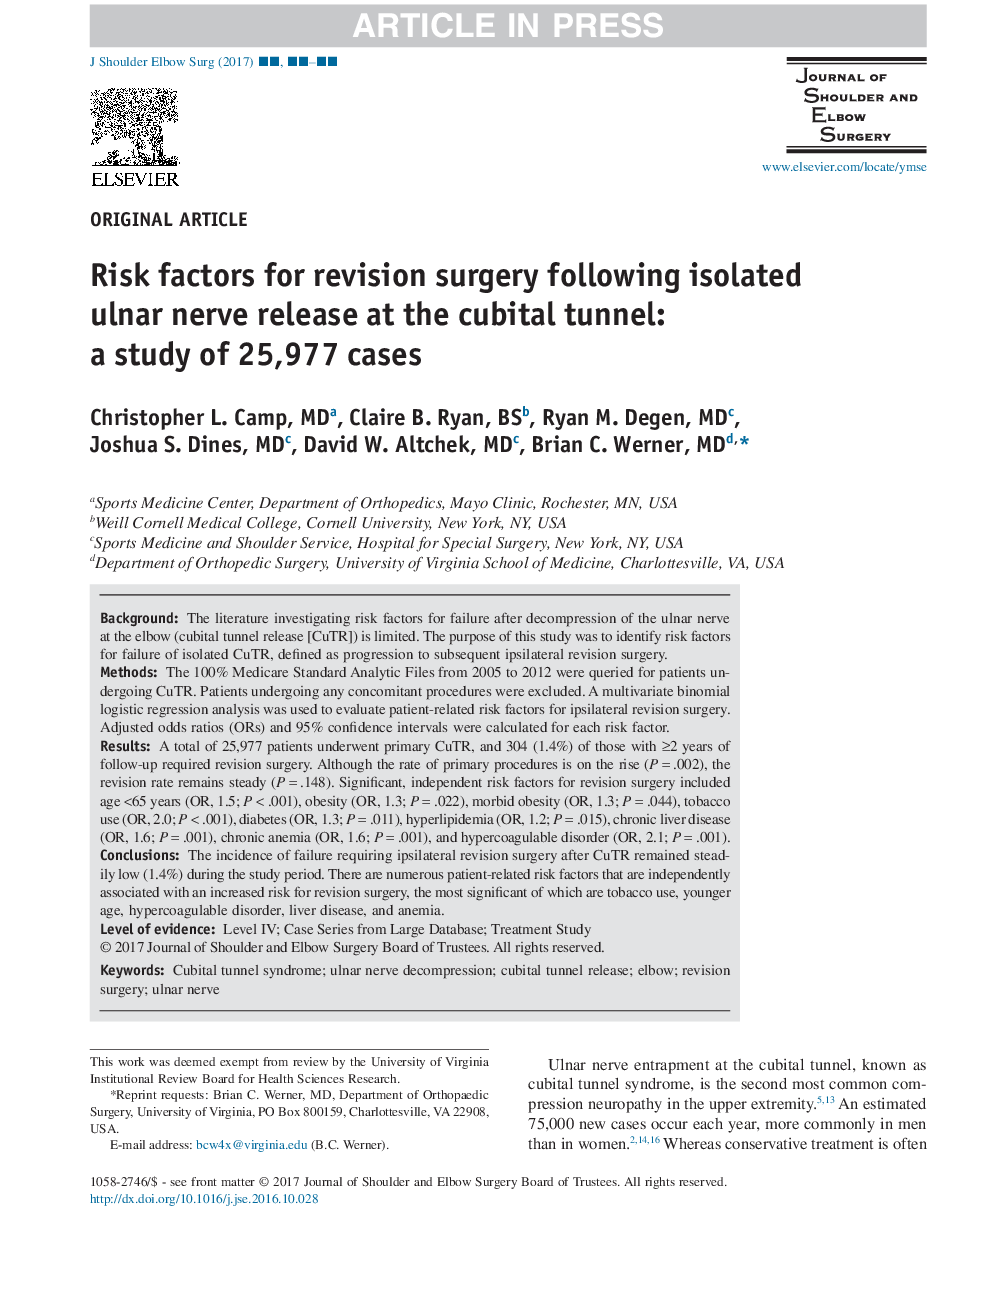 عوامل خطرساز جراحی تجدید نظر بعد از آزادی عصب اولنار در تونل مکعبی: مطالعهی 25،977 مورد 